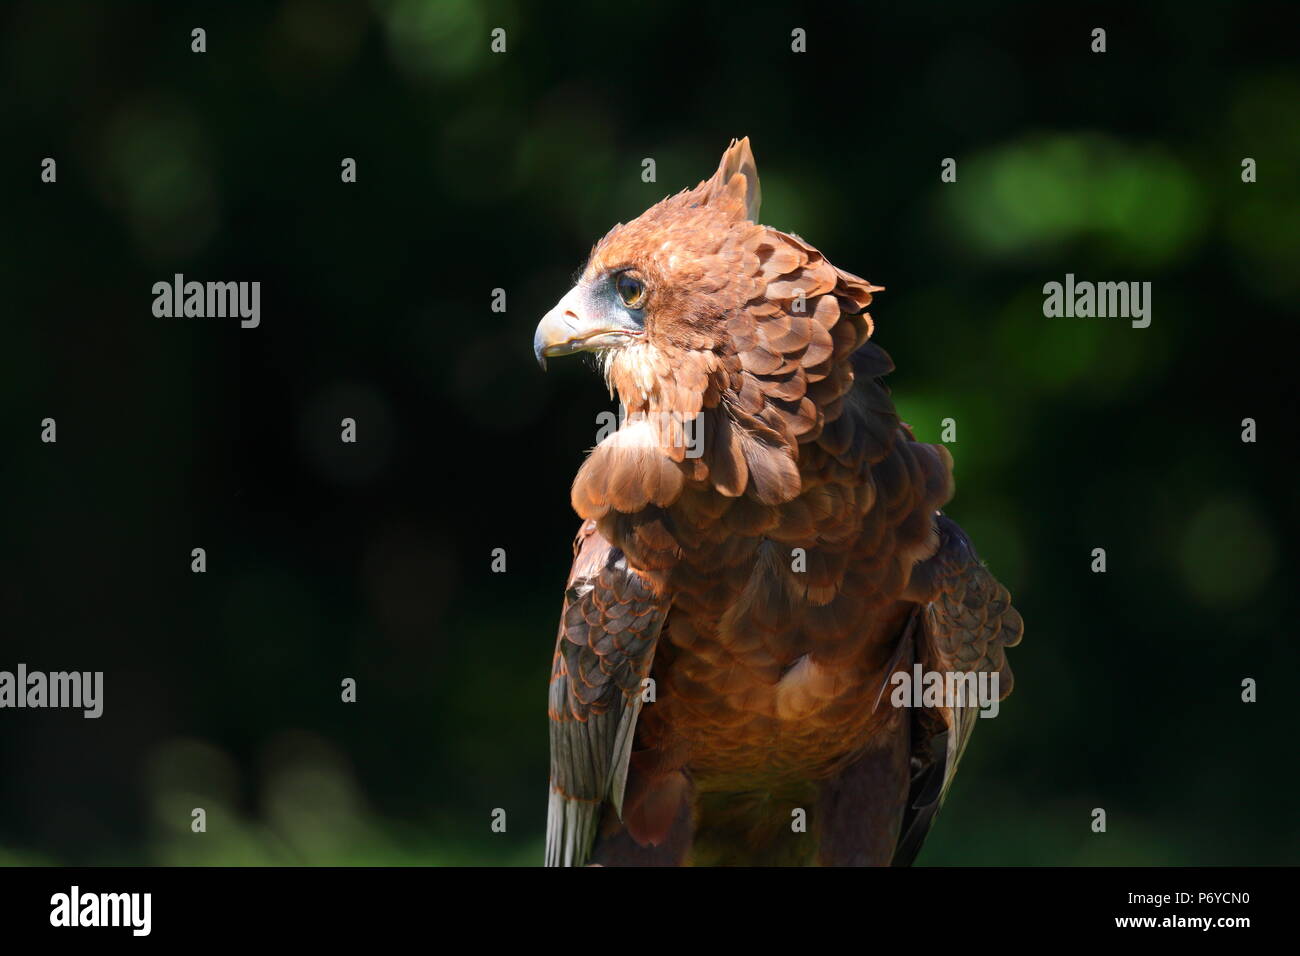 Ein Bachelor Adler im Paradise Park in Hayle, Cornwall auf Anzeige bei einer Ihrer Adler zeigt. Stockfoto